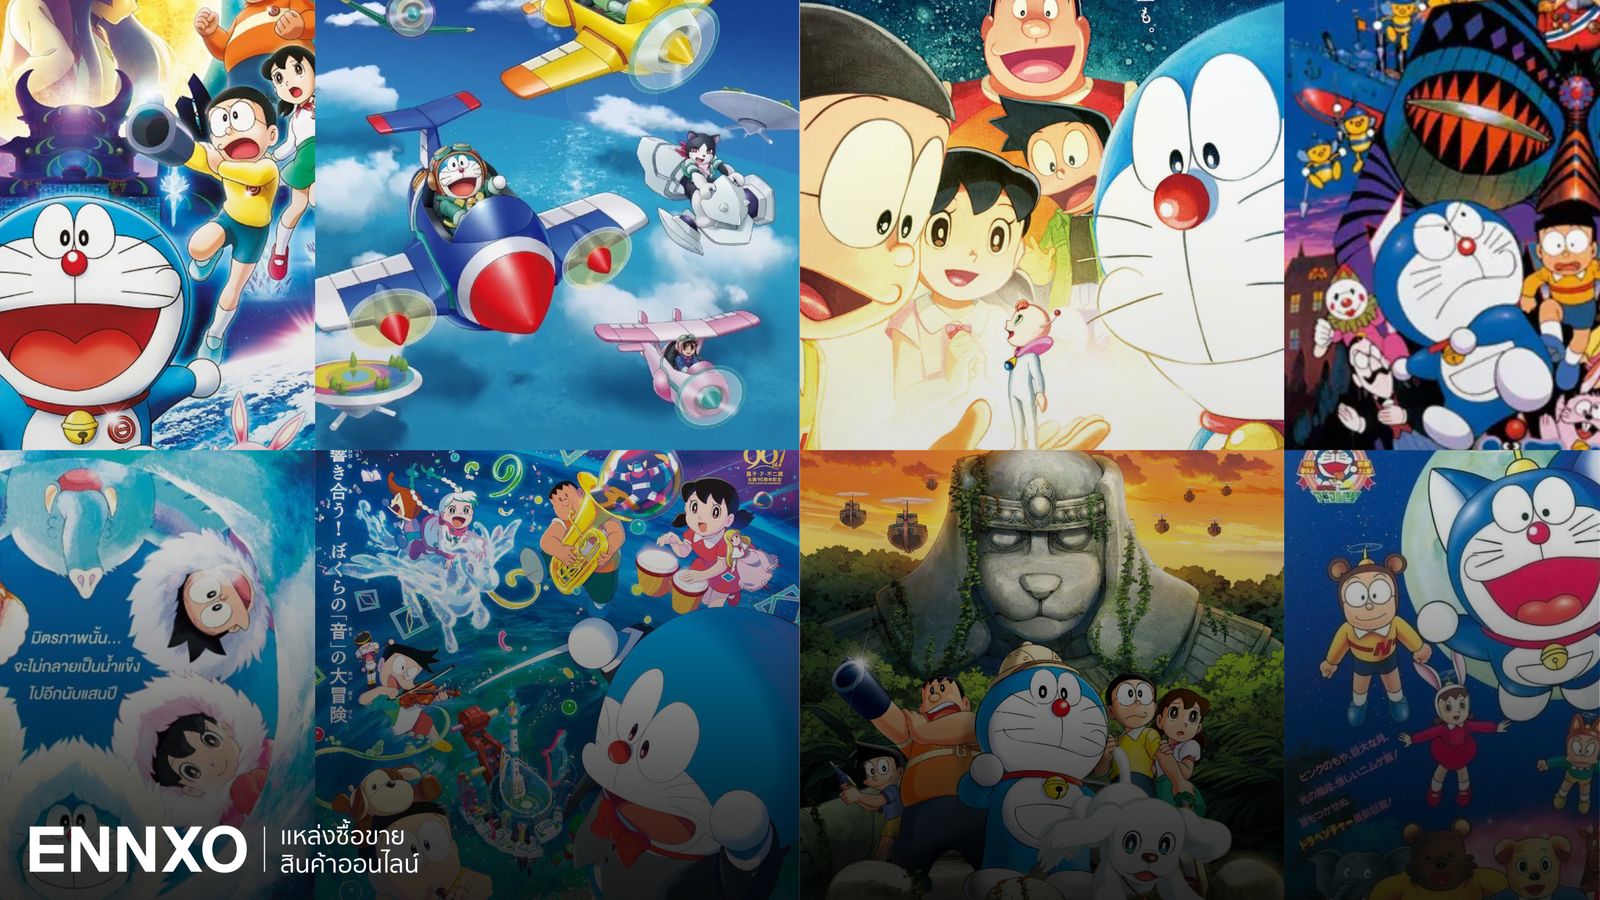 รวมโดเรม่อน (Doraemon) เดอะมูฟวี่ ทุกภาค ดูที่ไหน พร้อมเนื้อเรื่อง